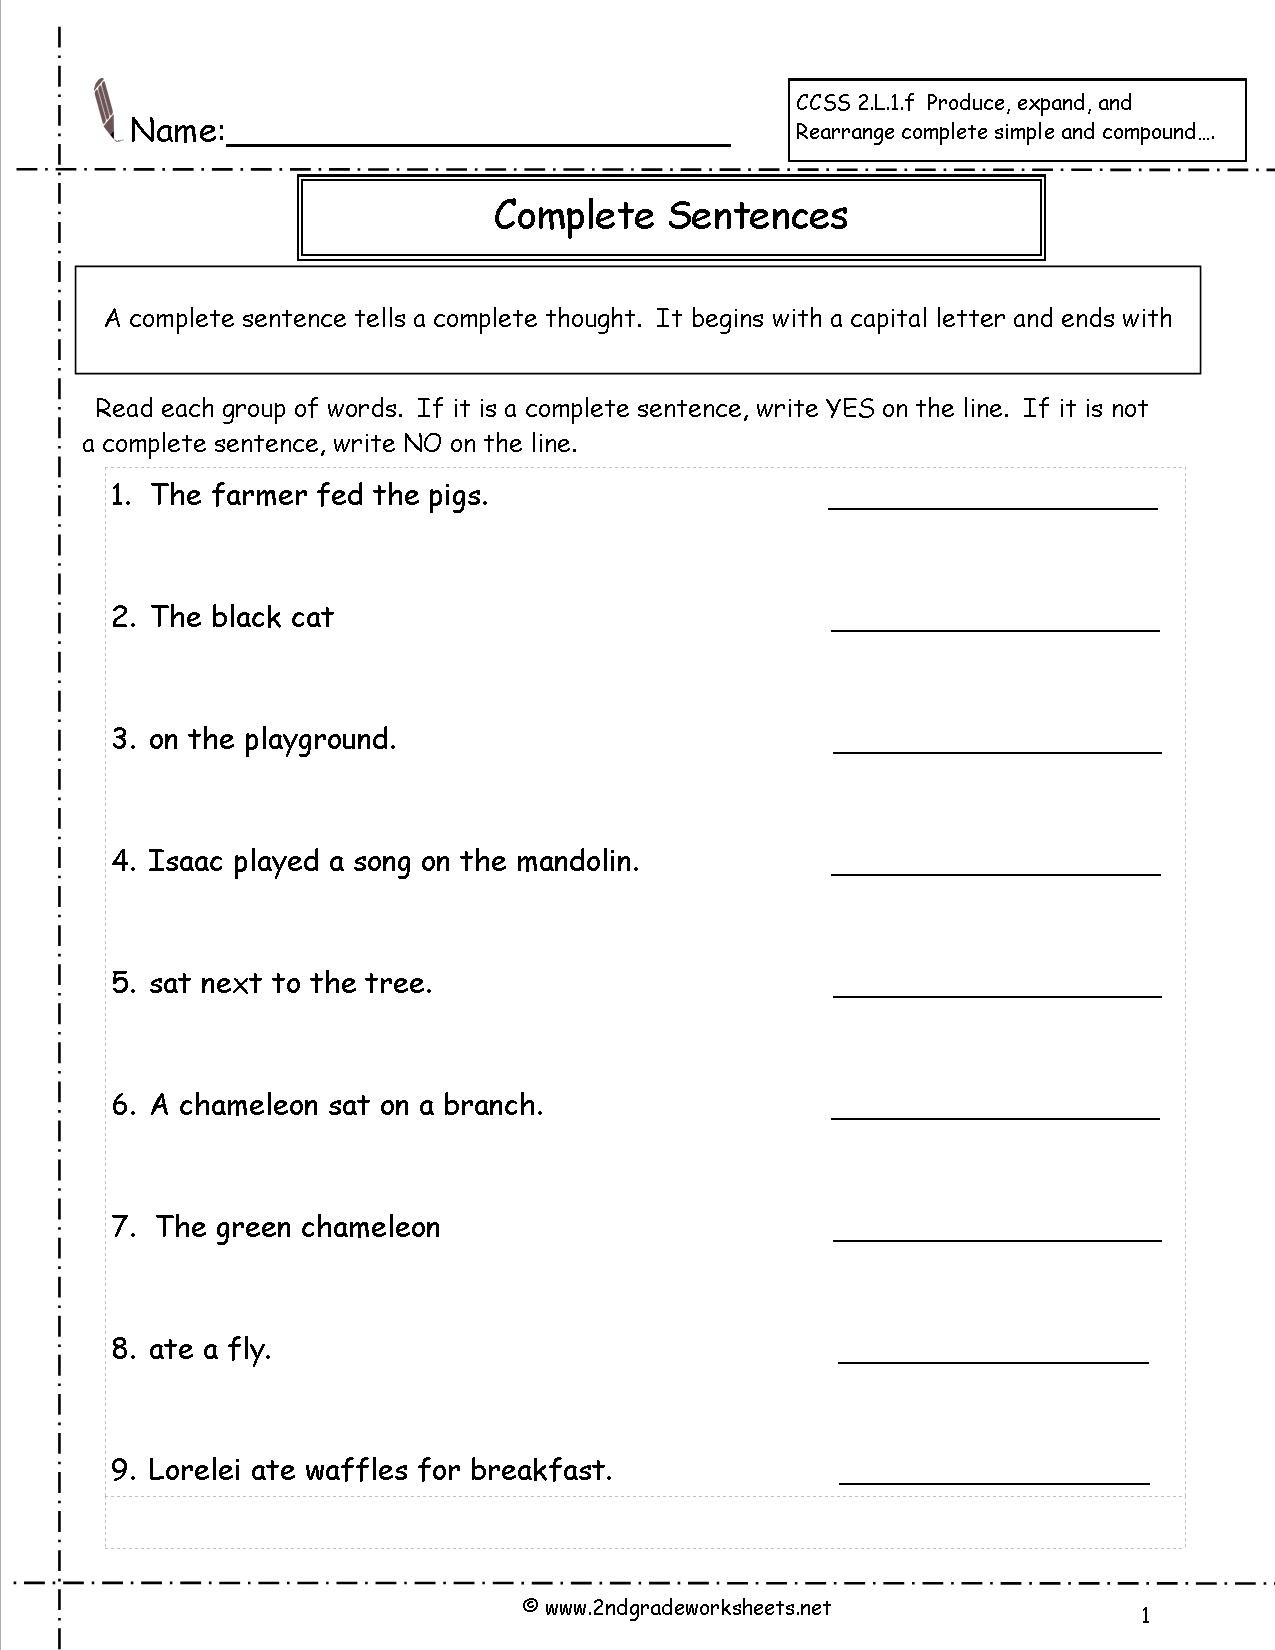 Complete Sentences Worksheets 1st Grade Second Grade Sentences Worksheets Ccss 2 L 1 F Worksheets